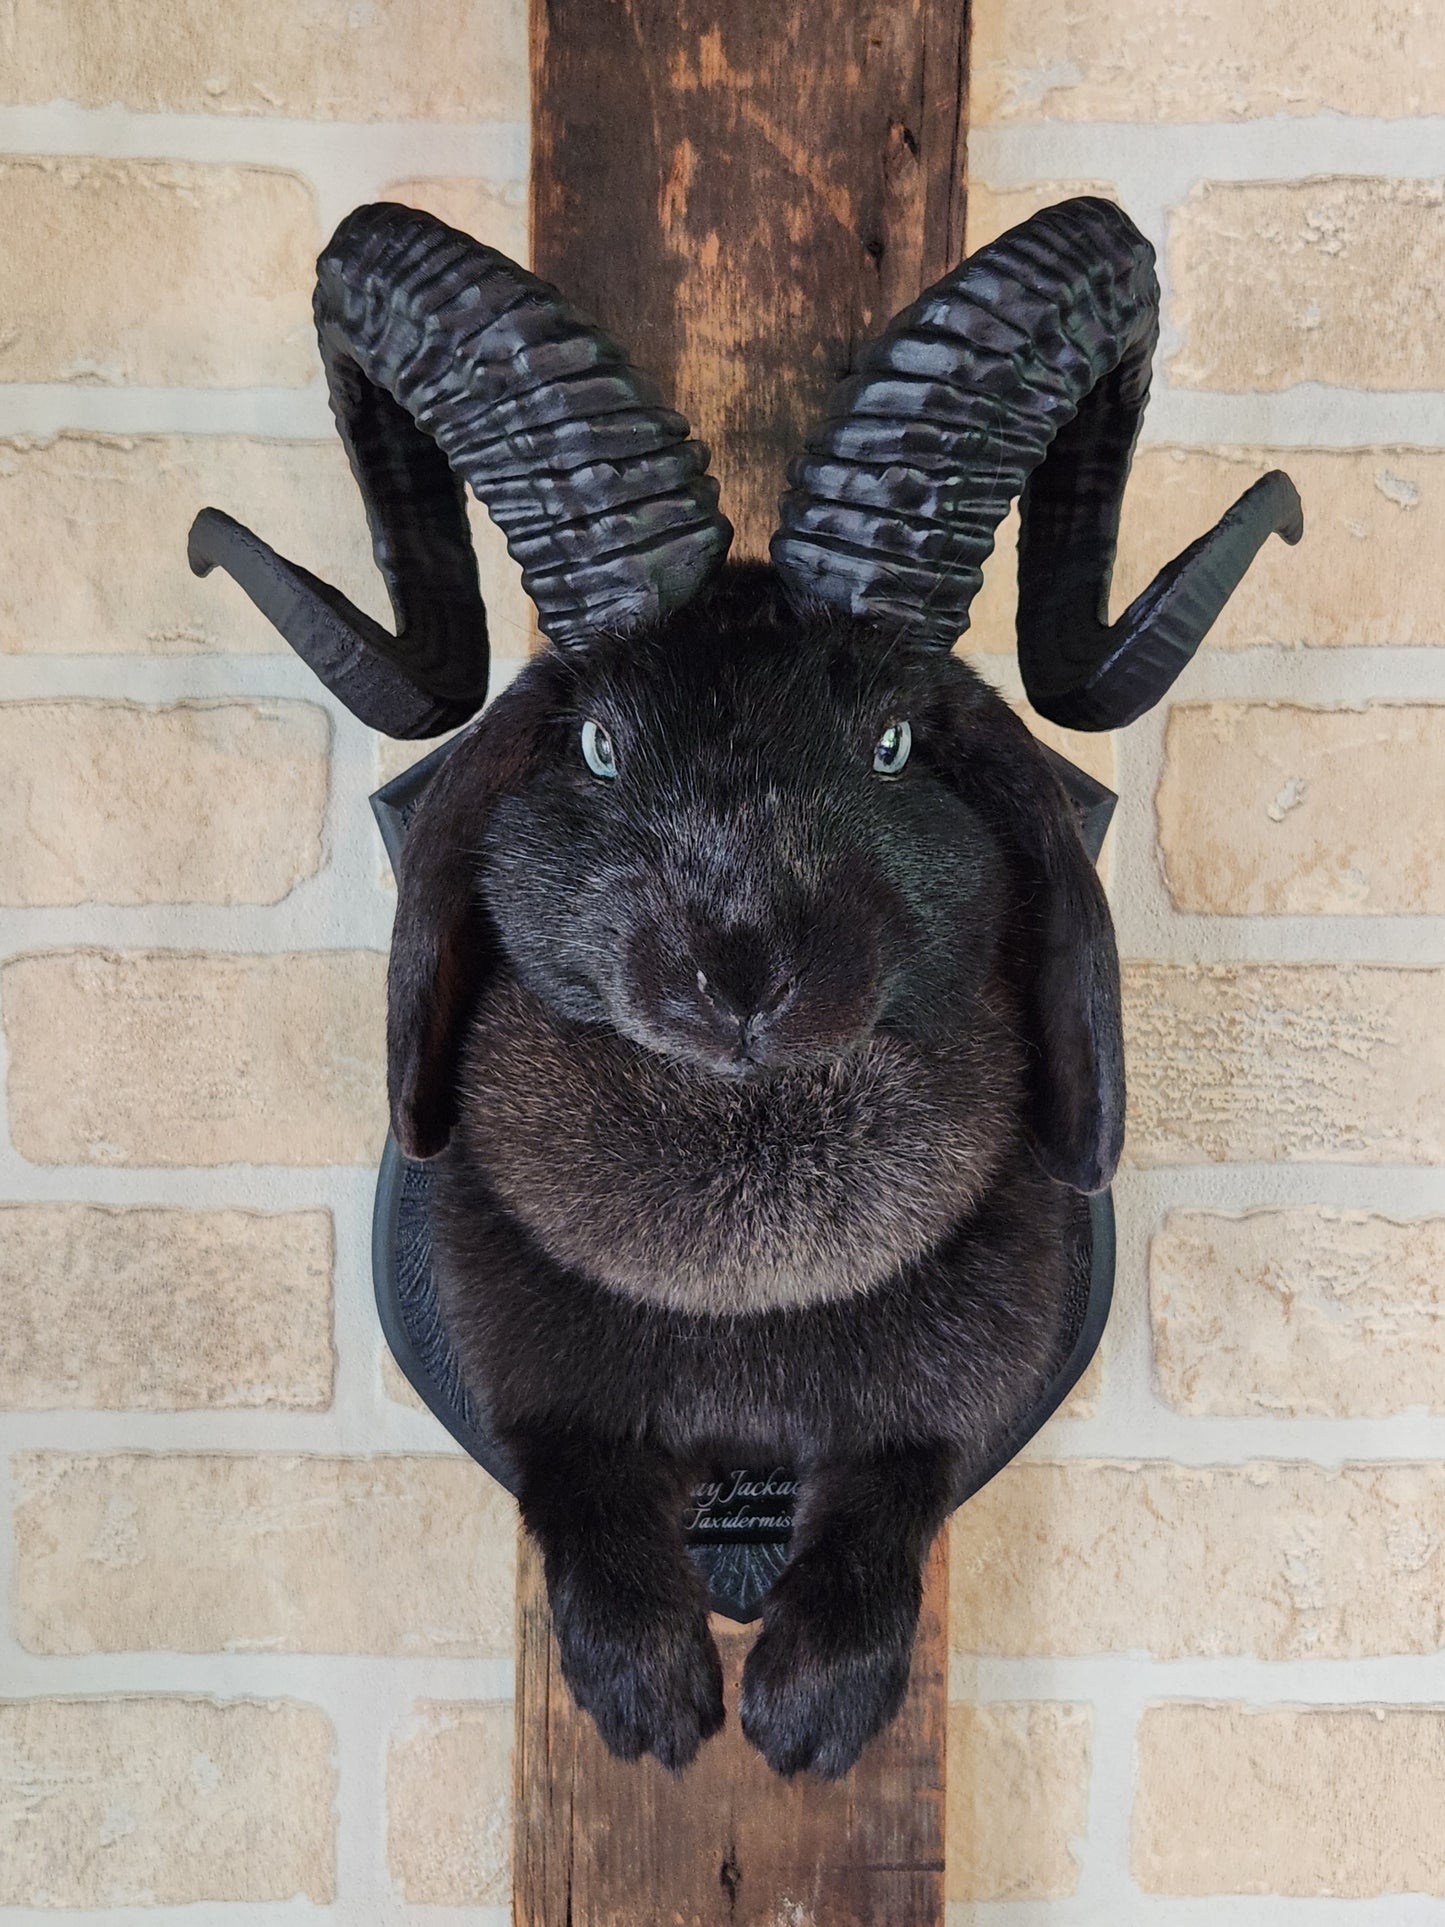 Black jackalope with horns & light blue eyes